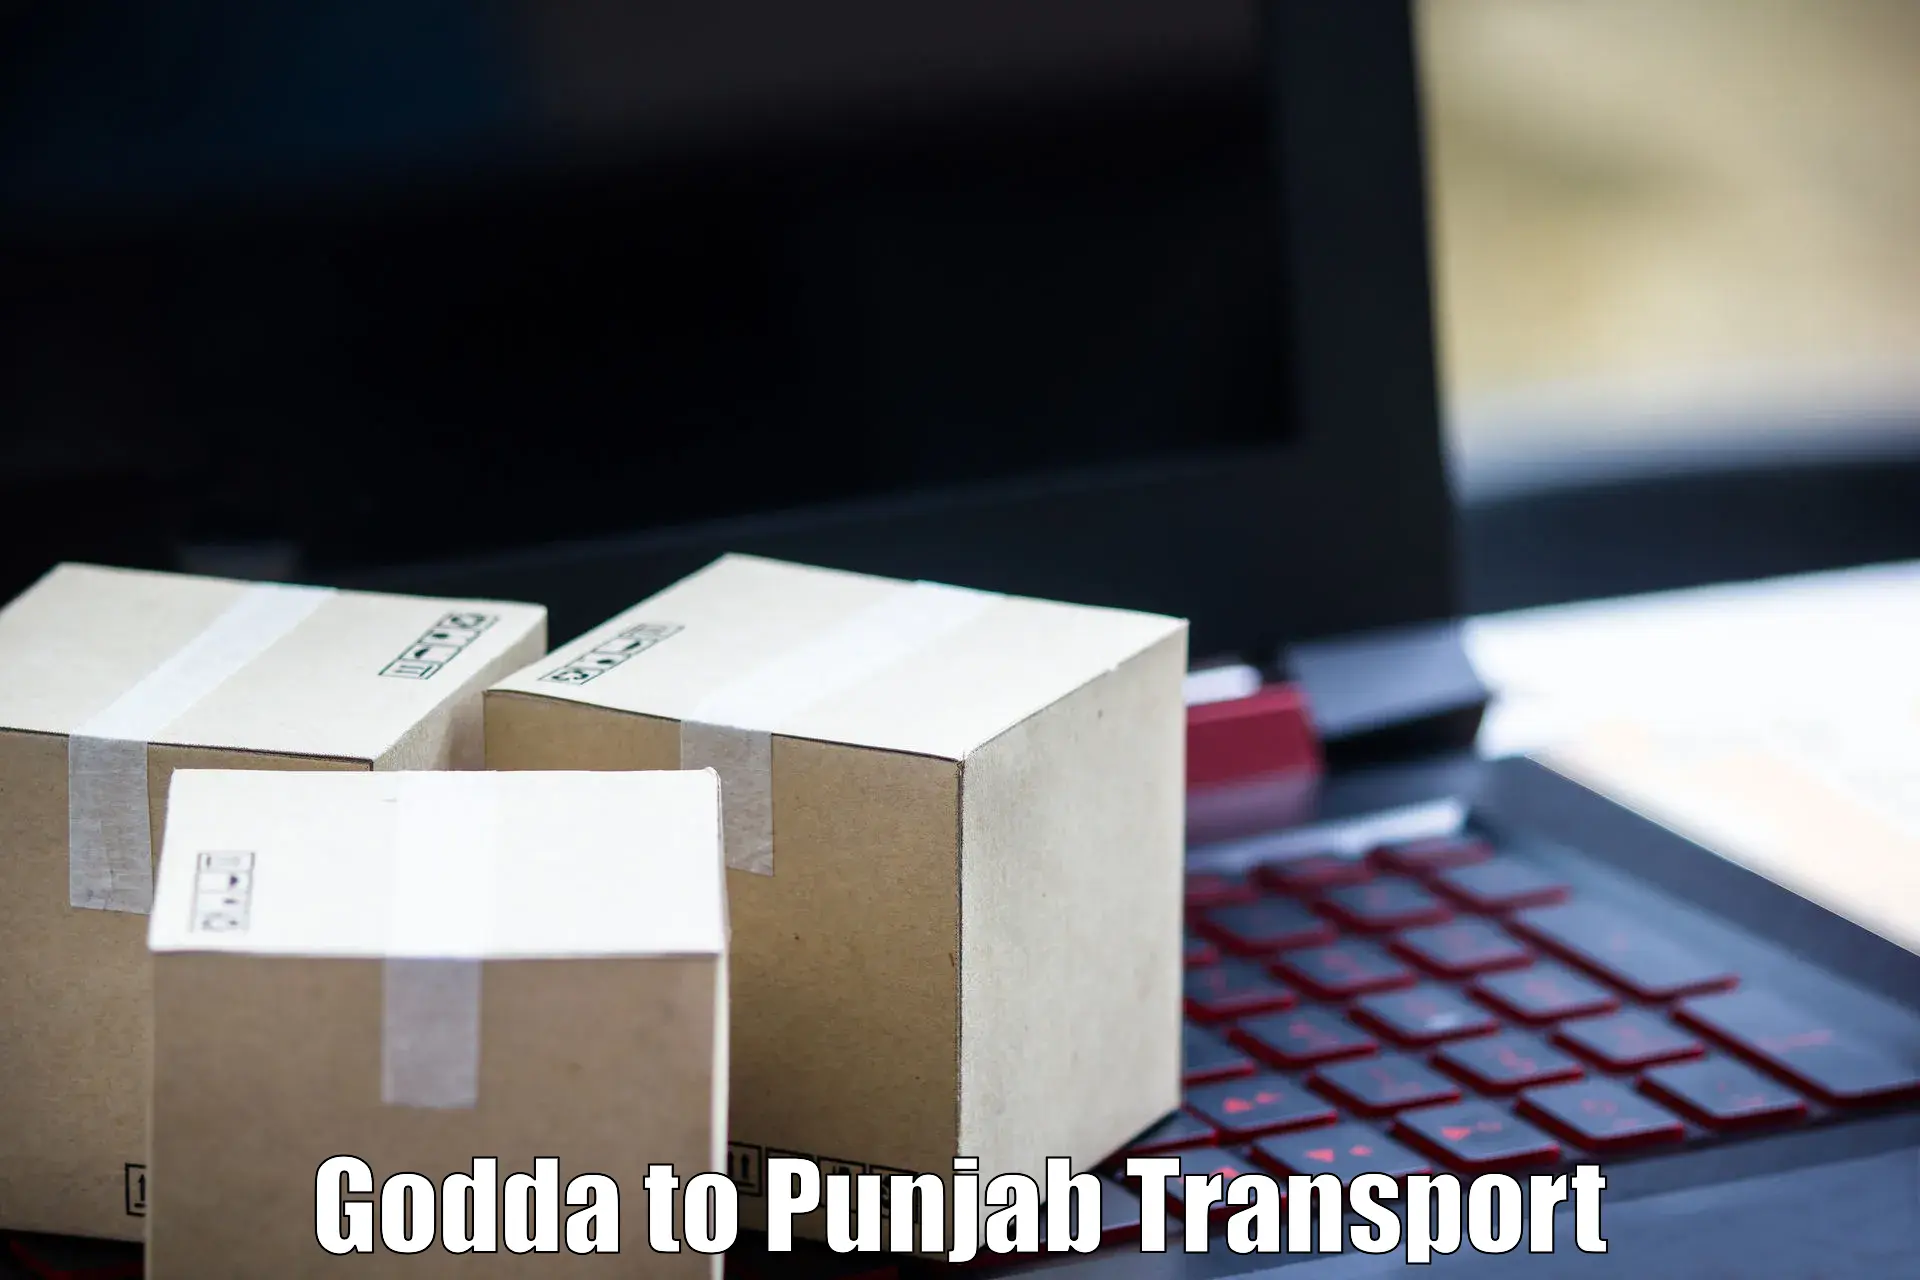 Vehicle parcel service Godda to Jalandhar